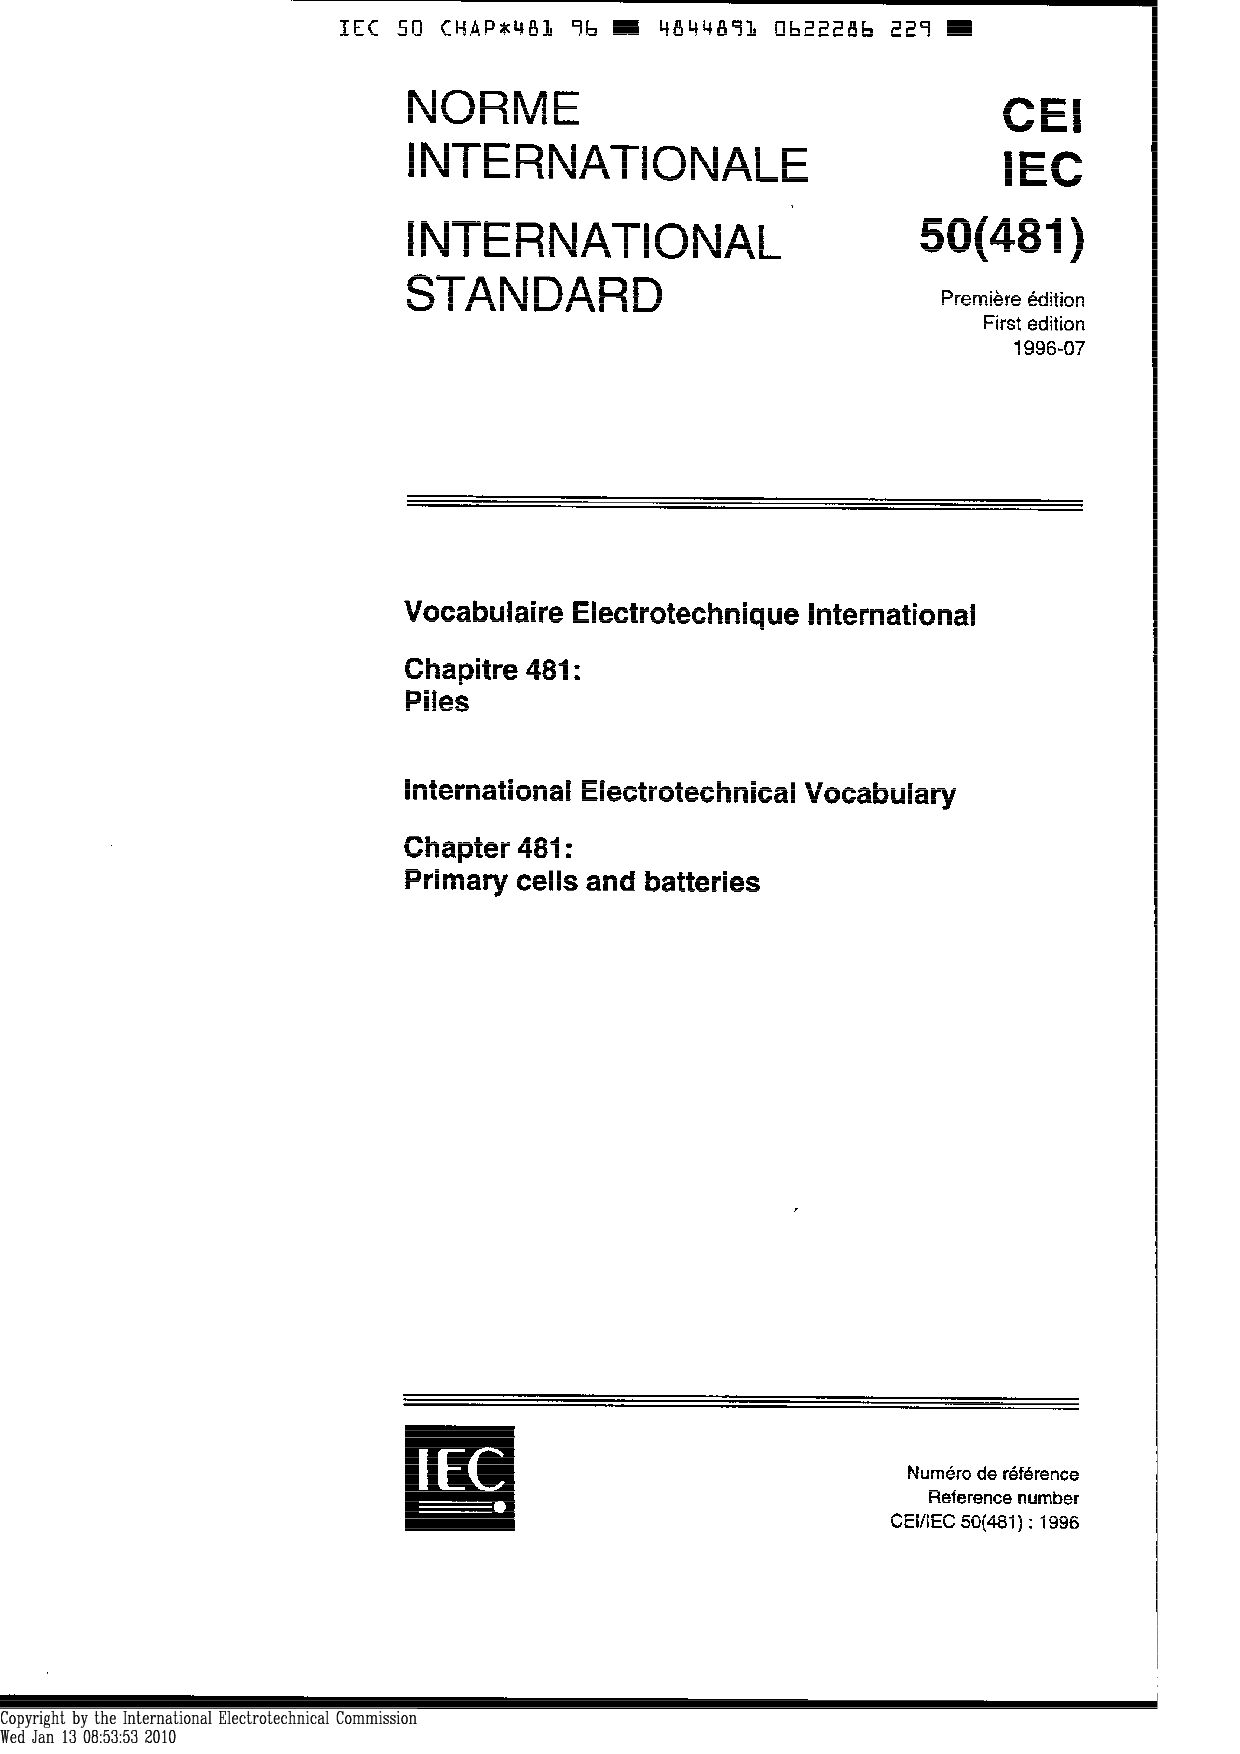 IEC 60050-481:1996